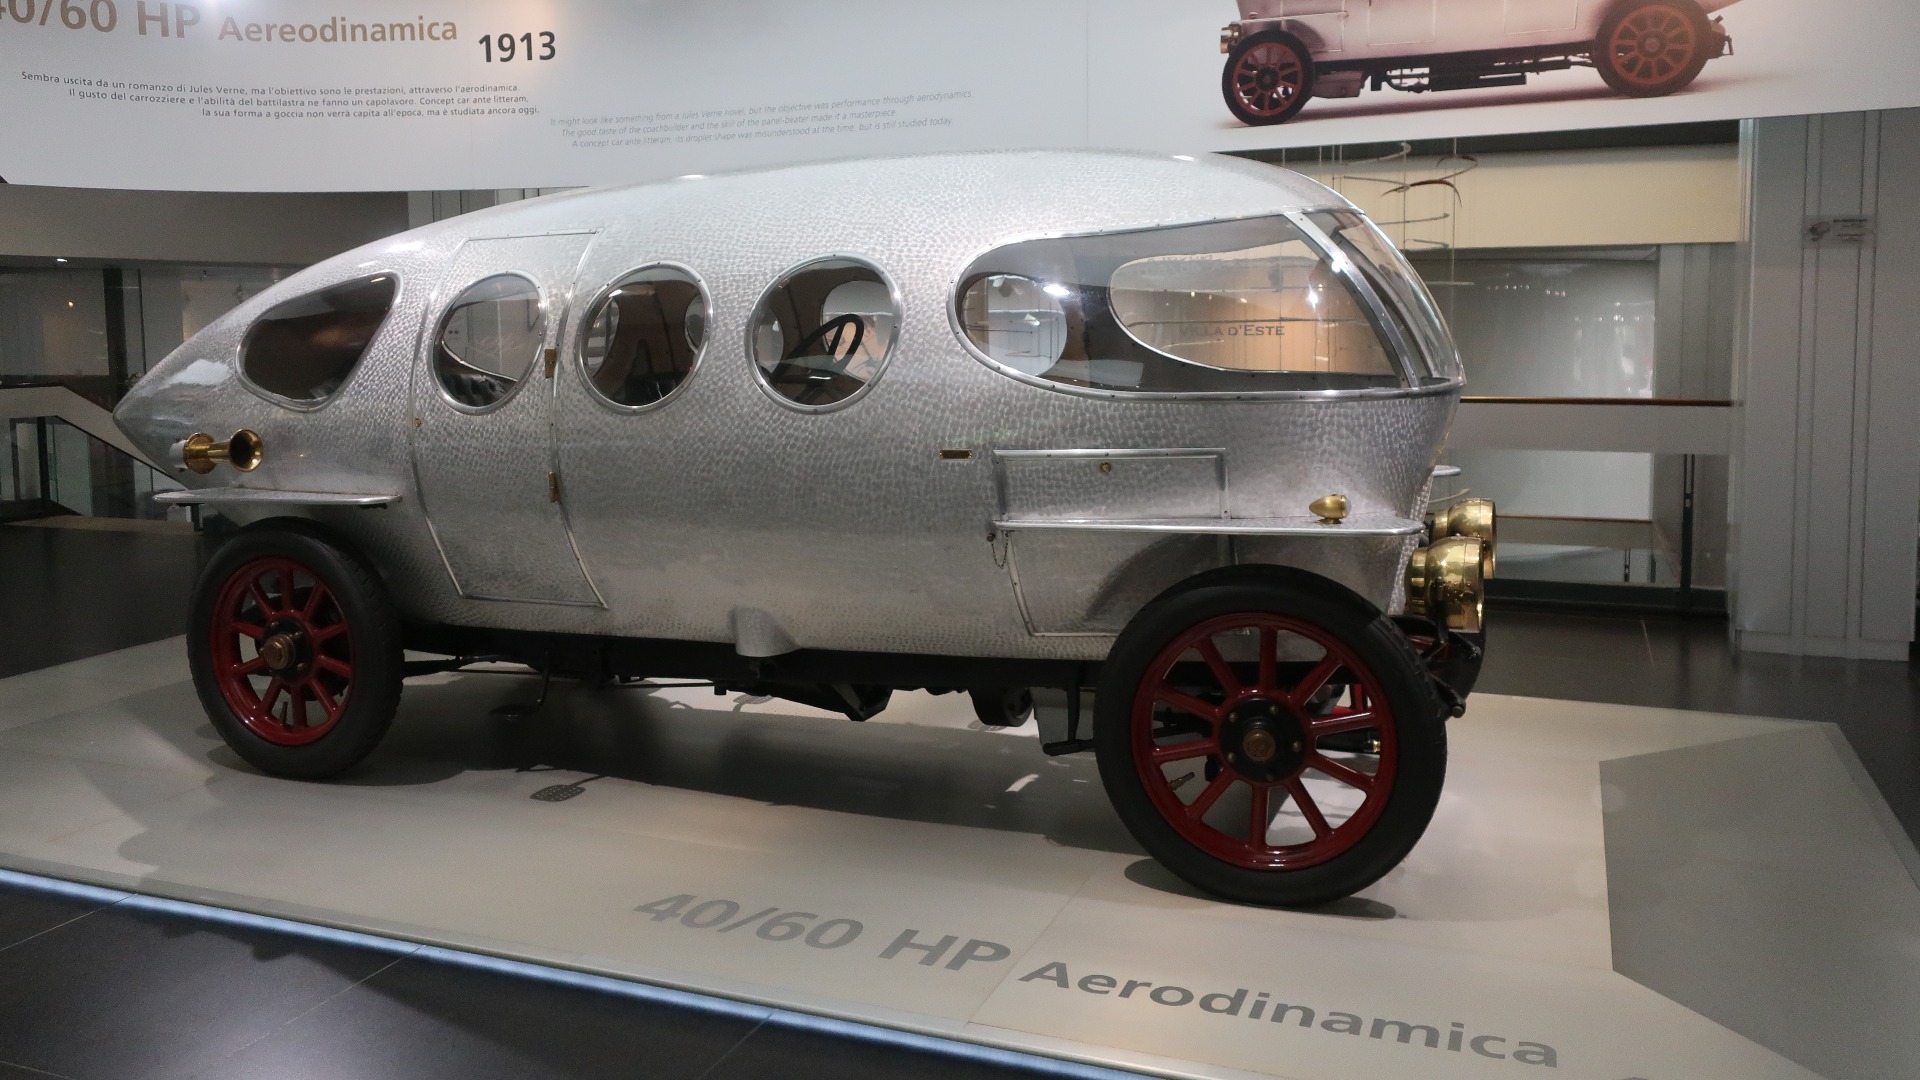 Den fantastiske Aerodinamica fra 1913, som opprinnelig gikk tapt, men som Alfa Romeo fikk gjenskapt for museet.